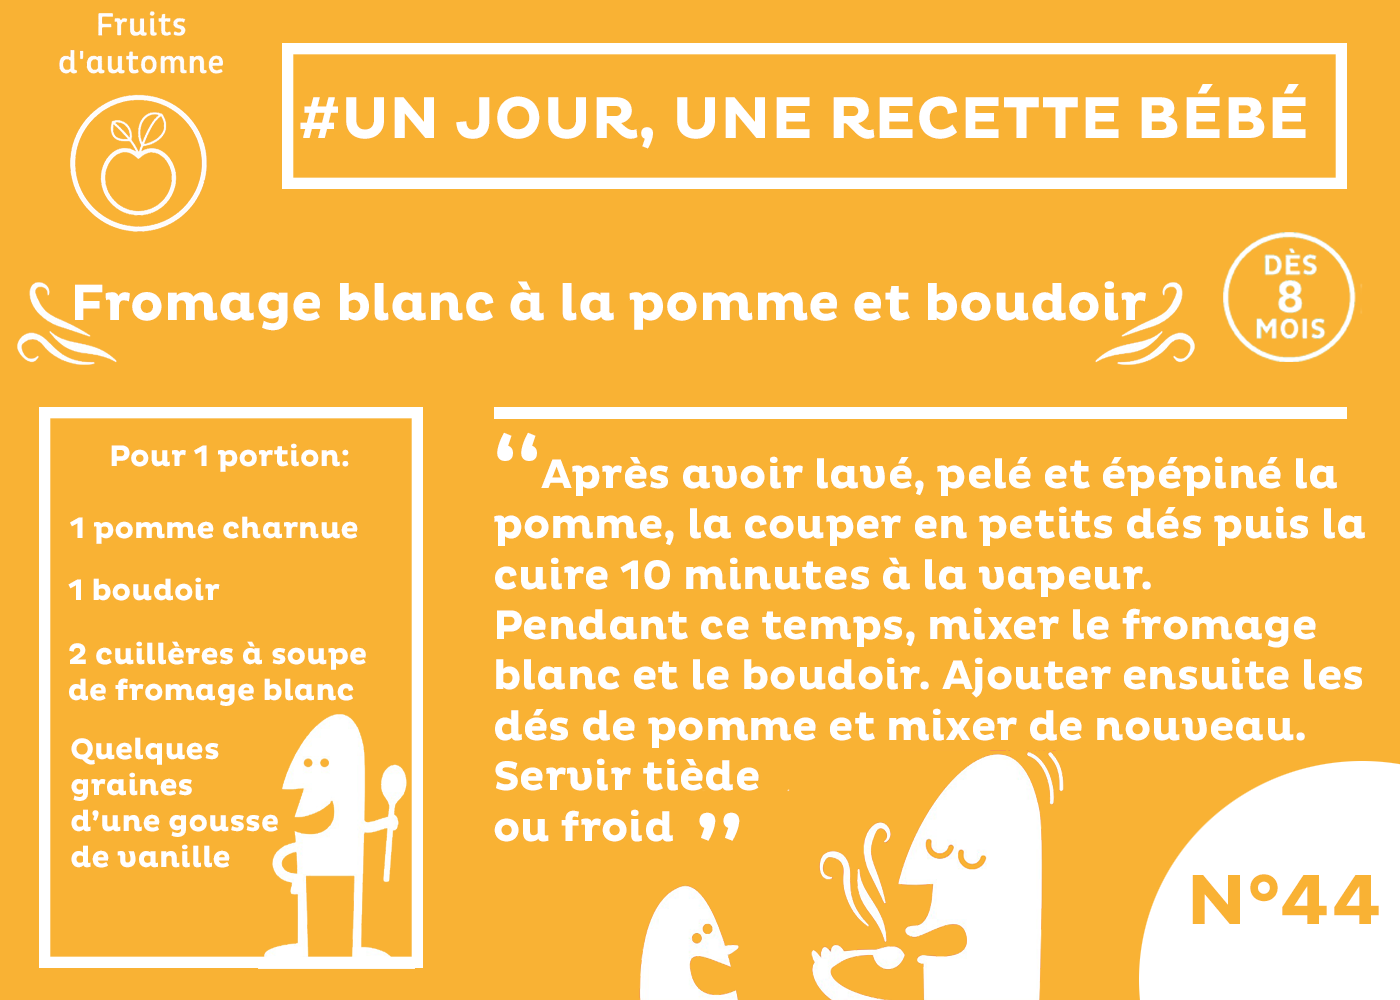 Recette Bebe 8 Mois Fromage Blanc A La Pomme Et Boudoir